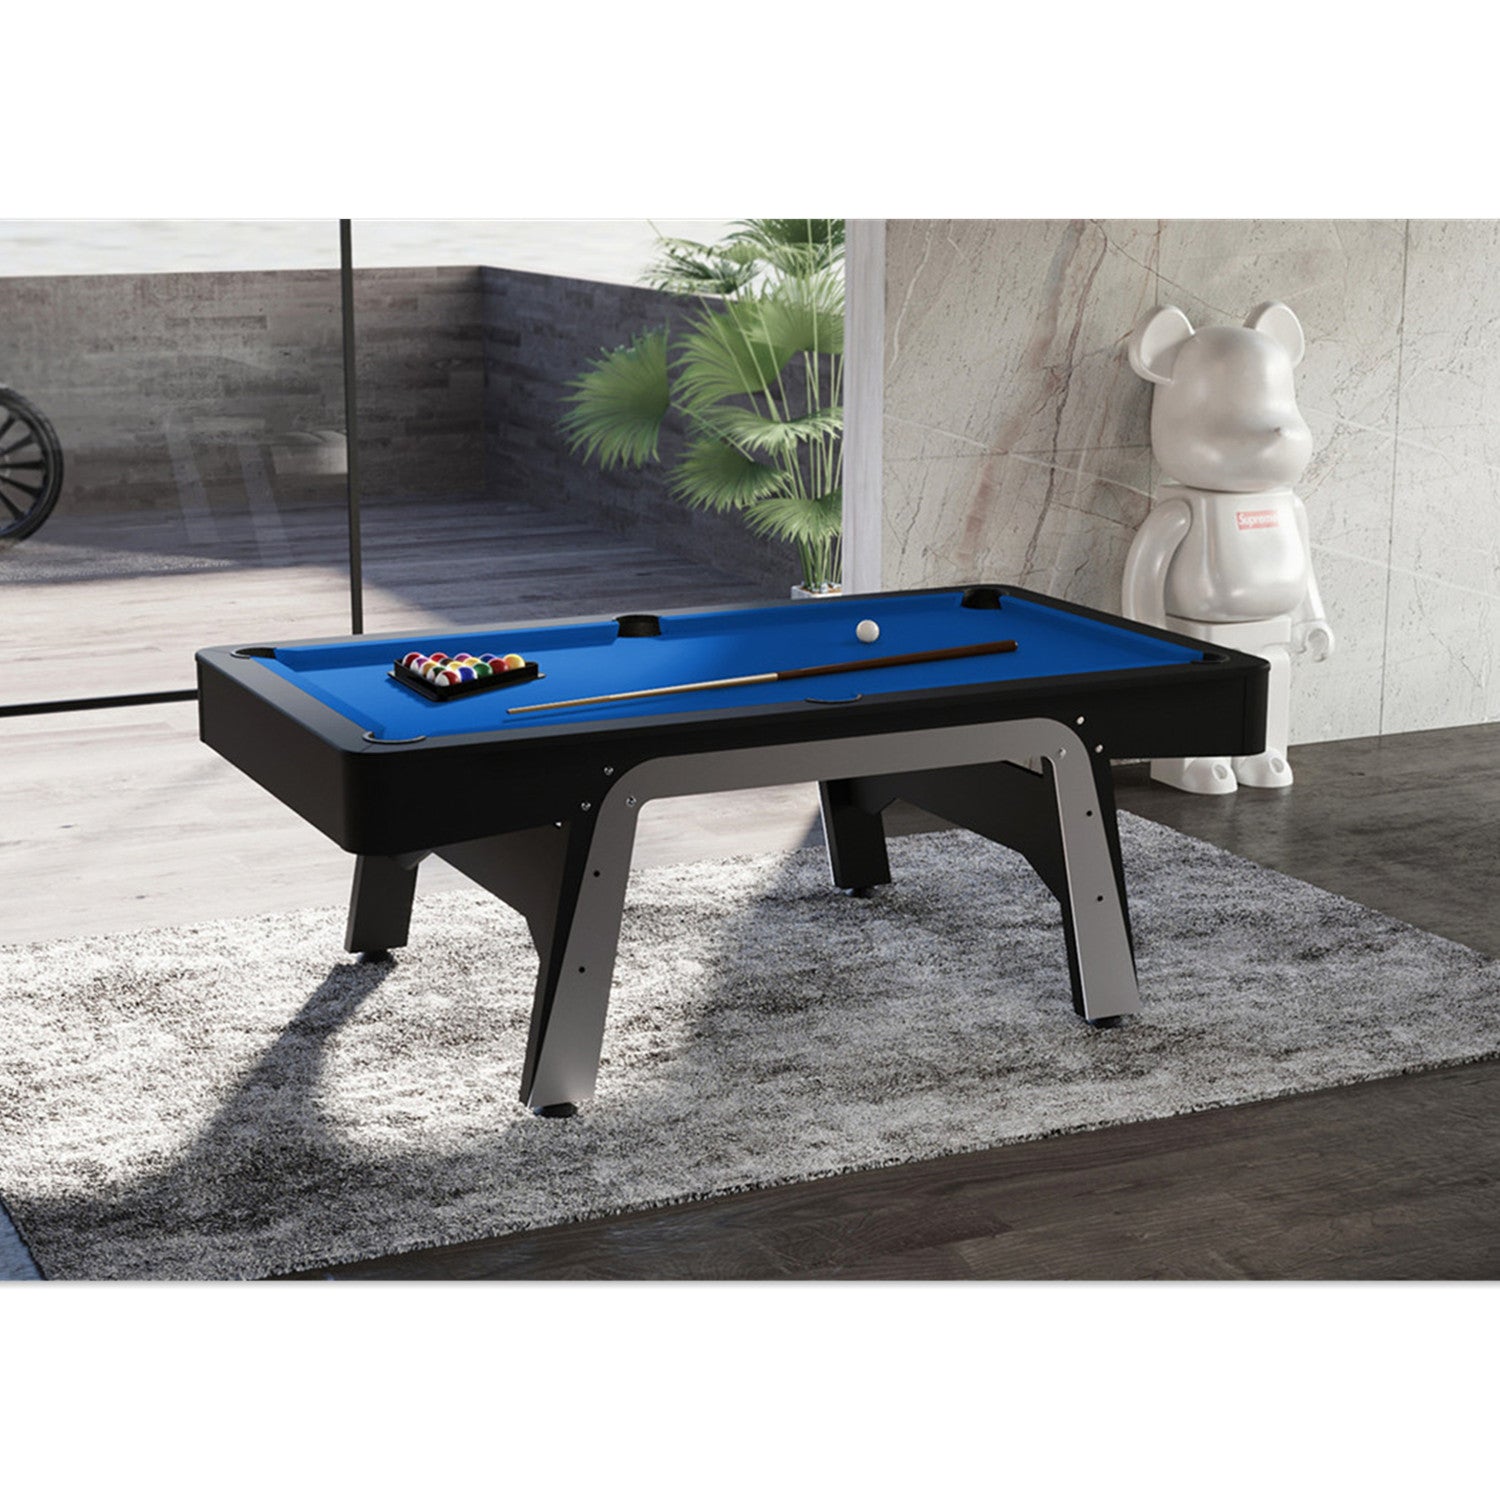 StarTrek 3IN1 Pool Table-8FT Blue/Top Storage